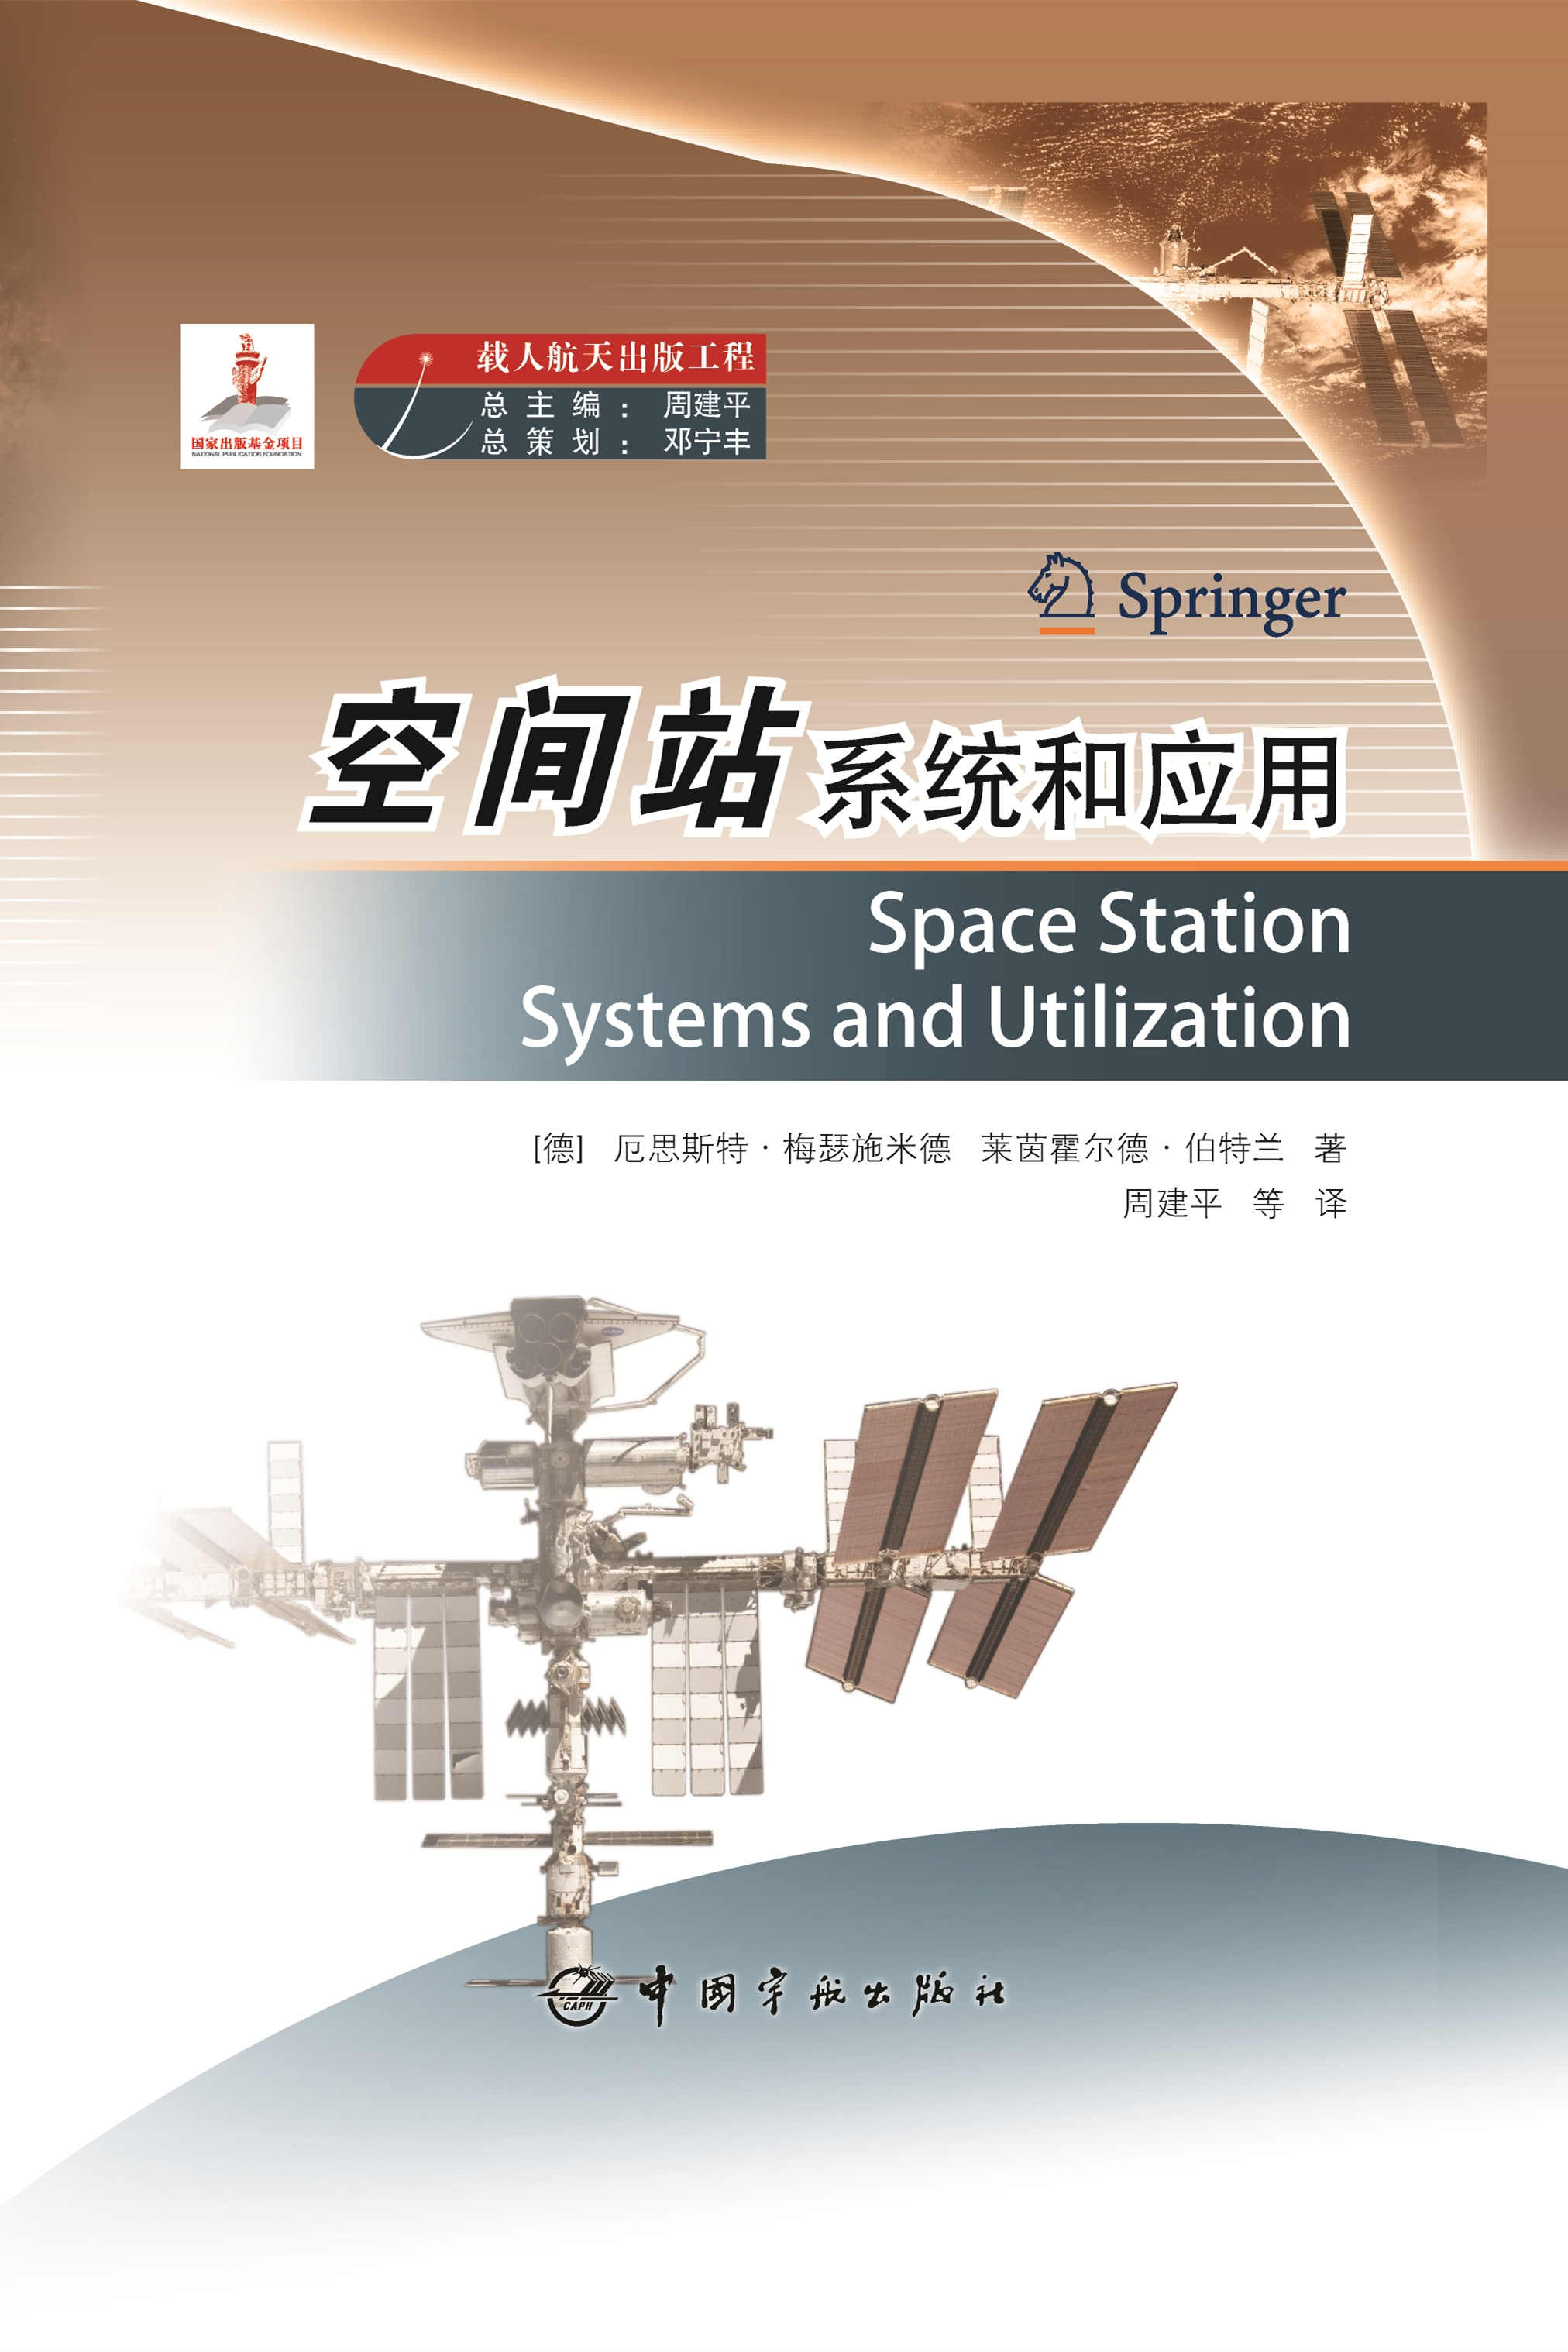 中国空间站官方图片